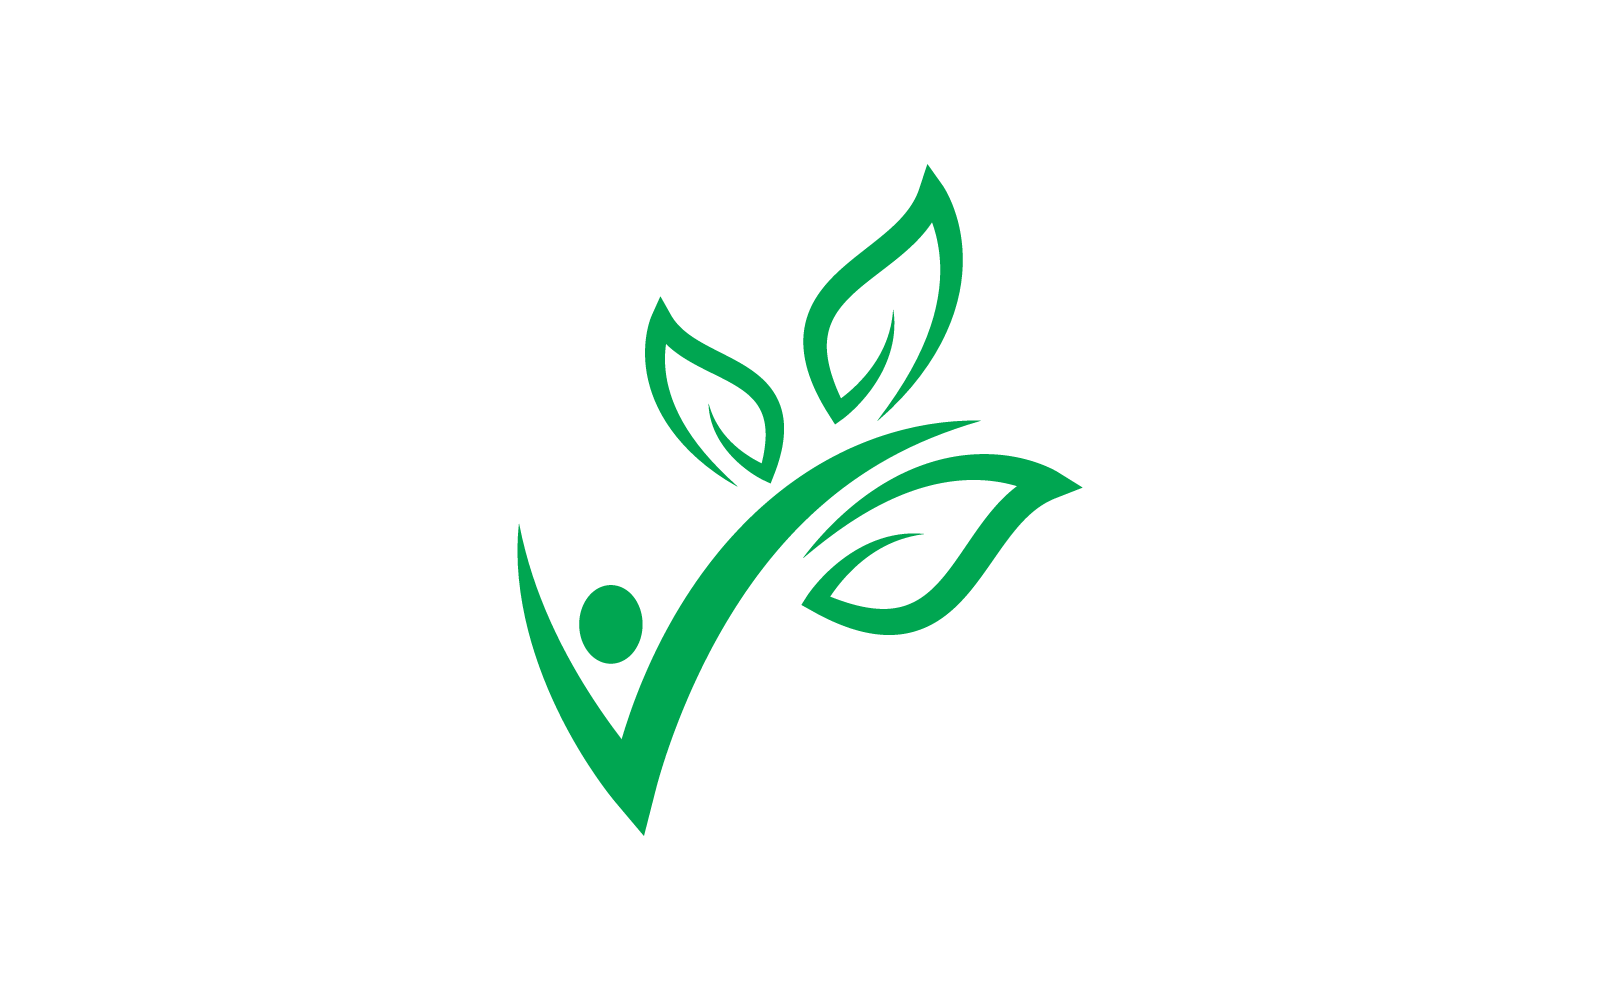 Green leaf illustration nature logo vector flat design